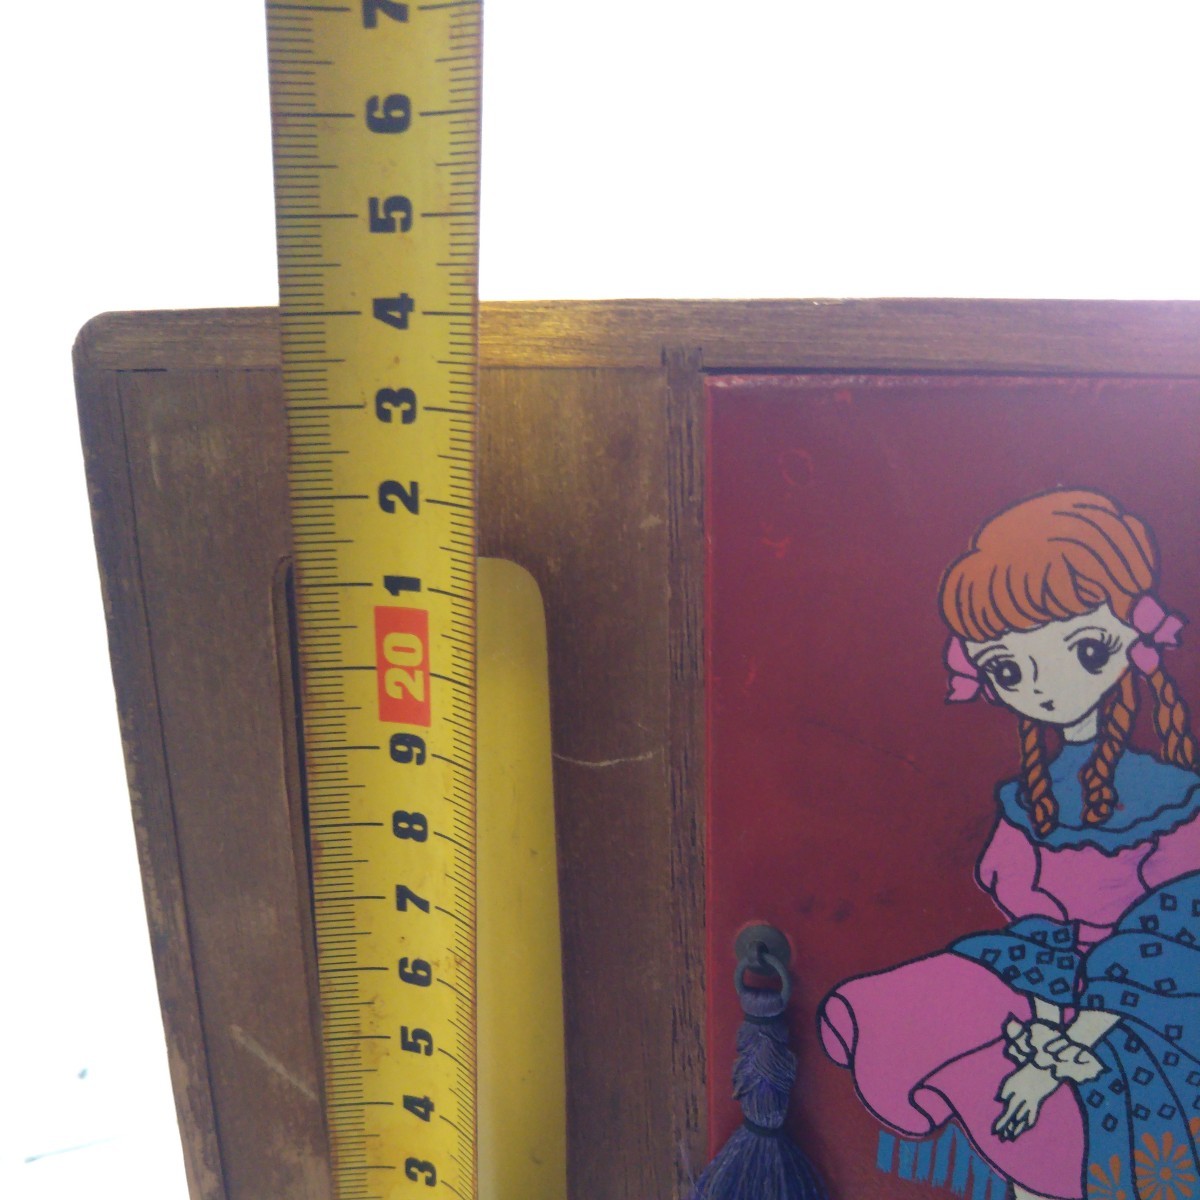  Showa Retro из дерева игрушка европейская одежда Dance ребенок развлечение миниатюра шкаф мебель игрушка зеркало есть . кукла для "дочки-матери" Licca-chan б/у текущее состояние товар 